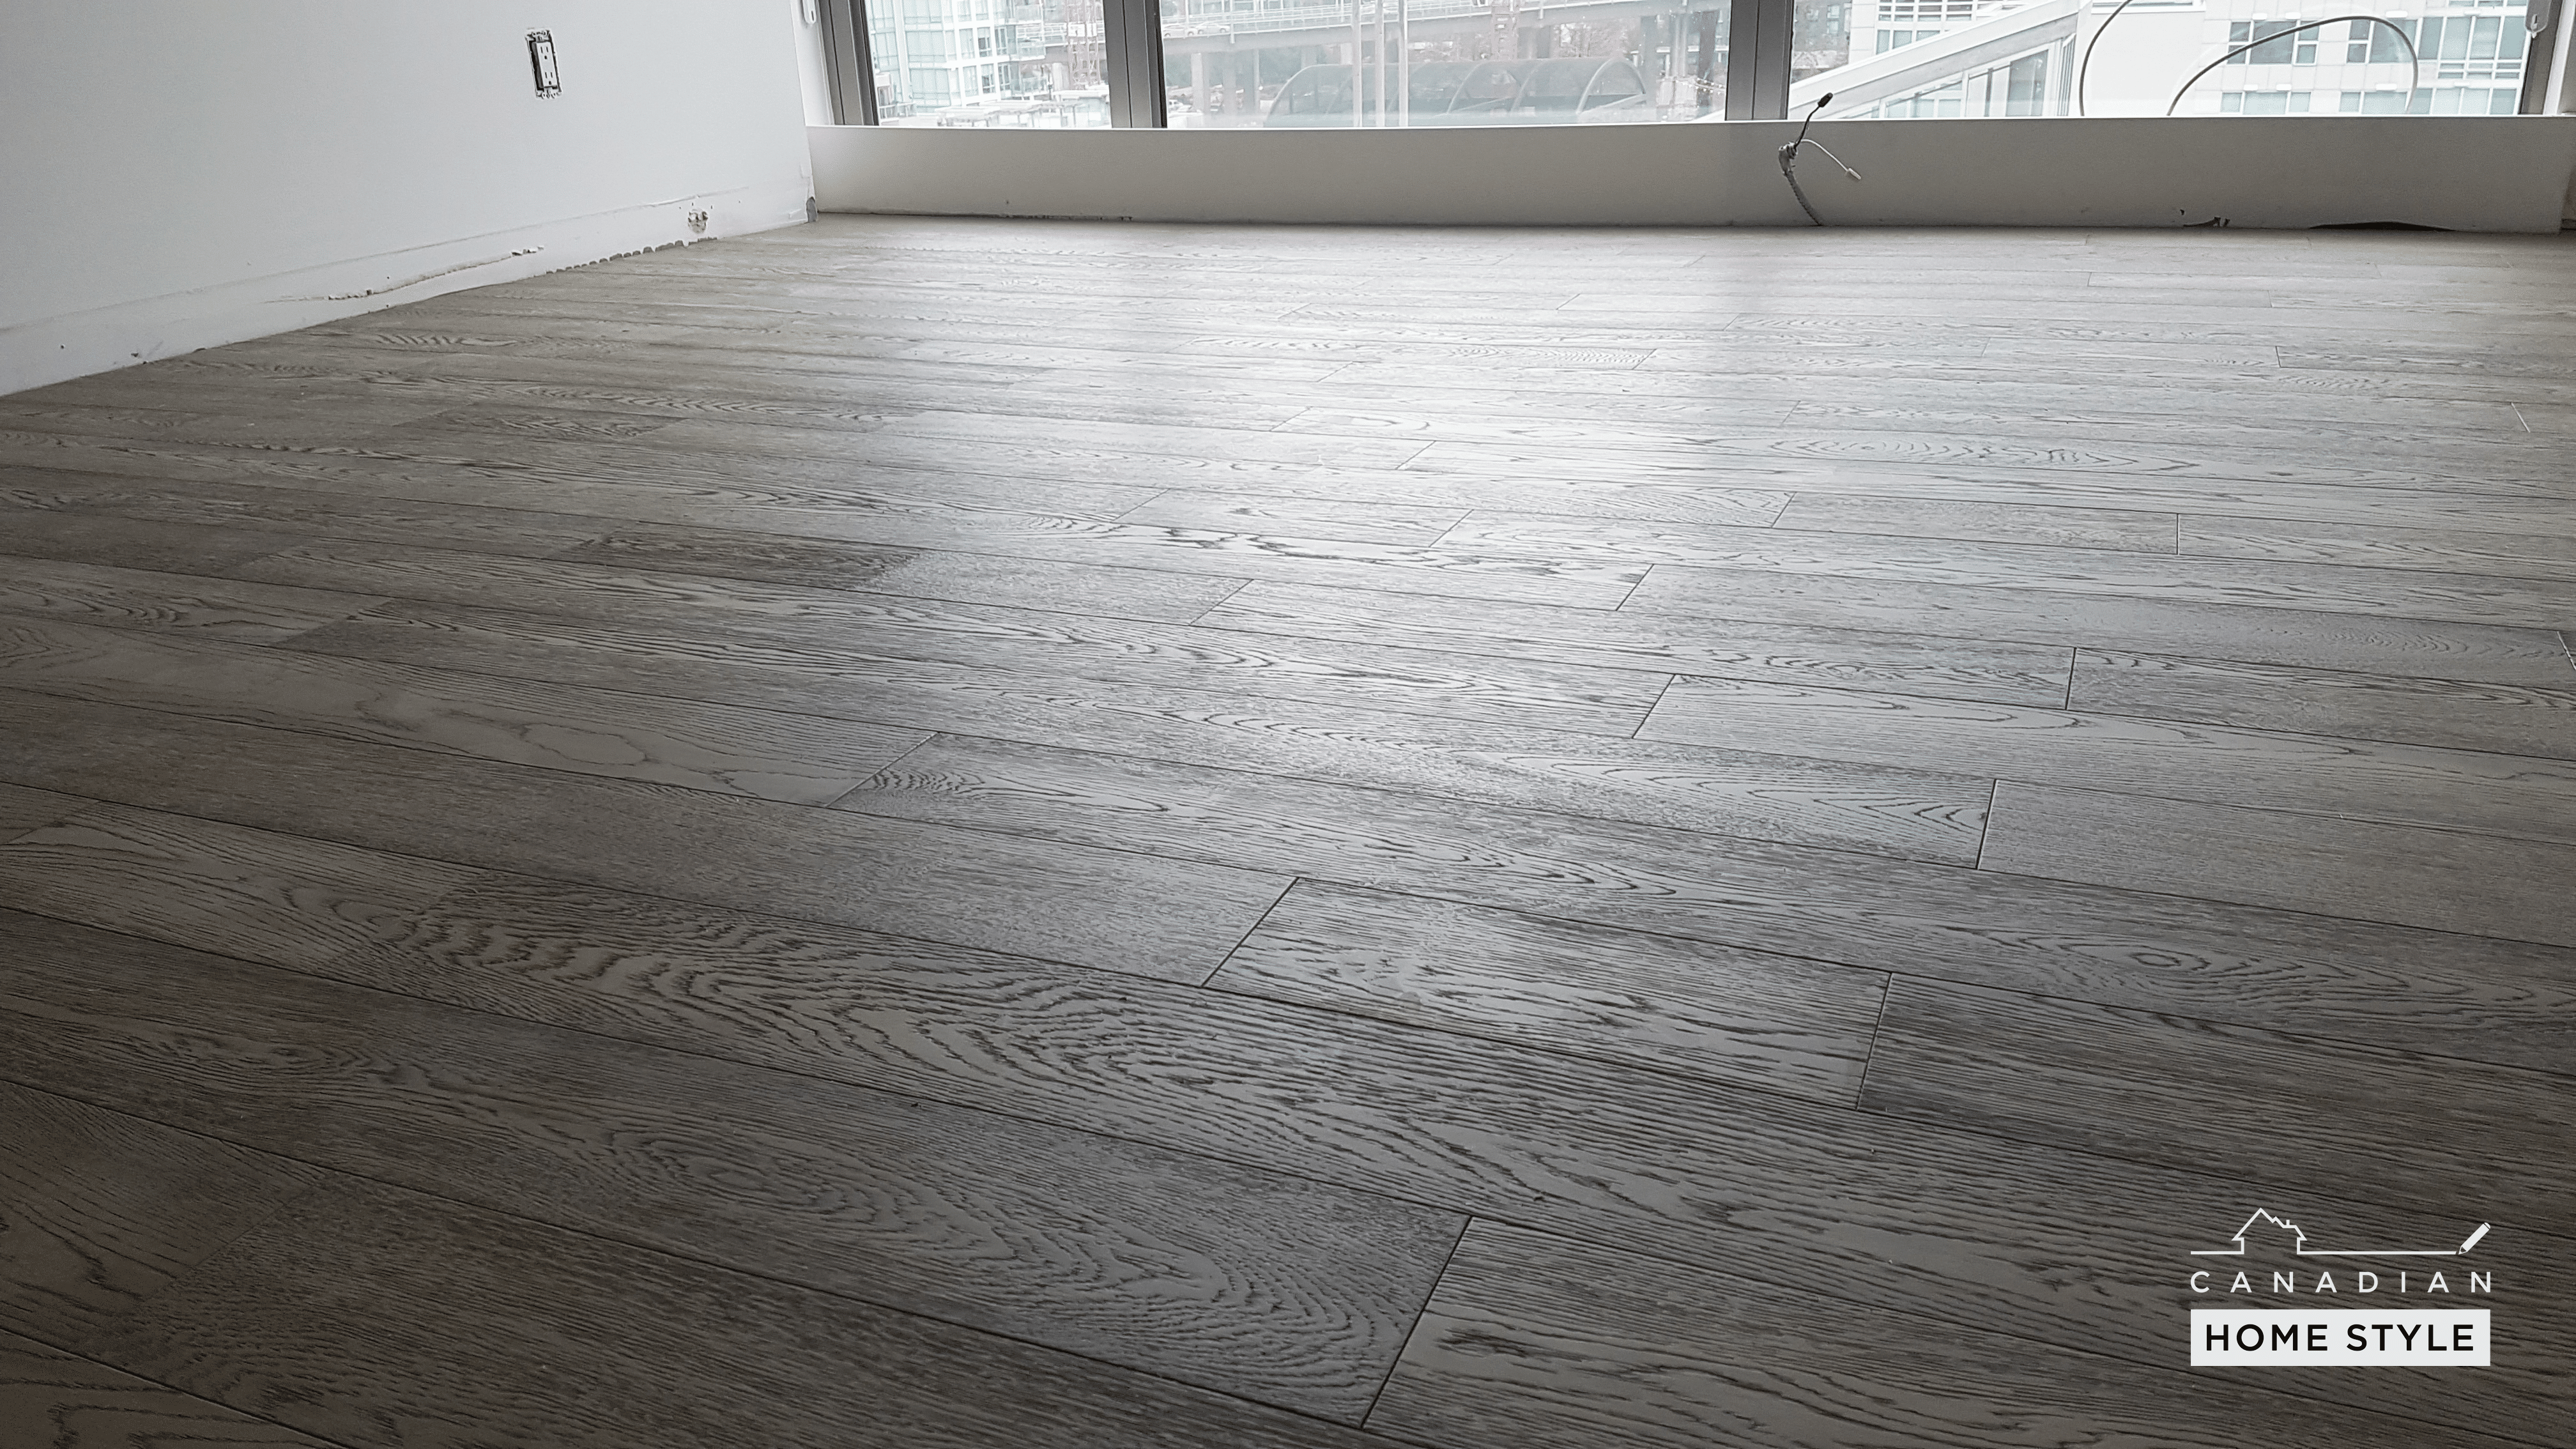 Elegant solid wood floors in Vancouver